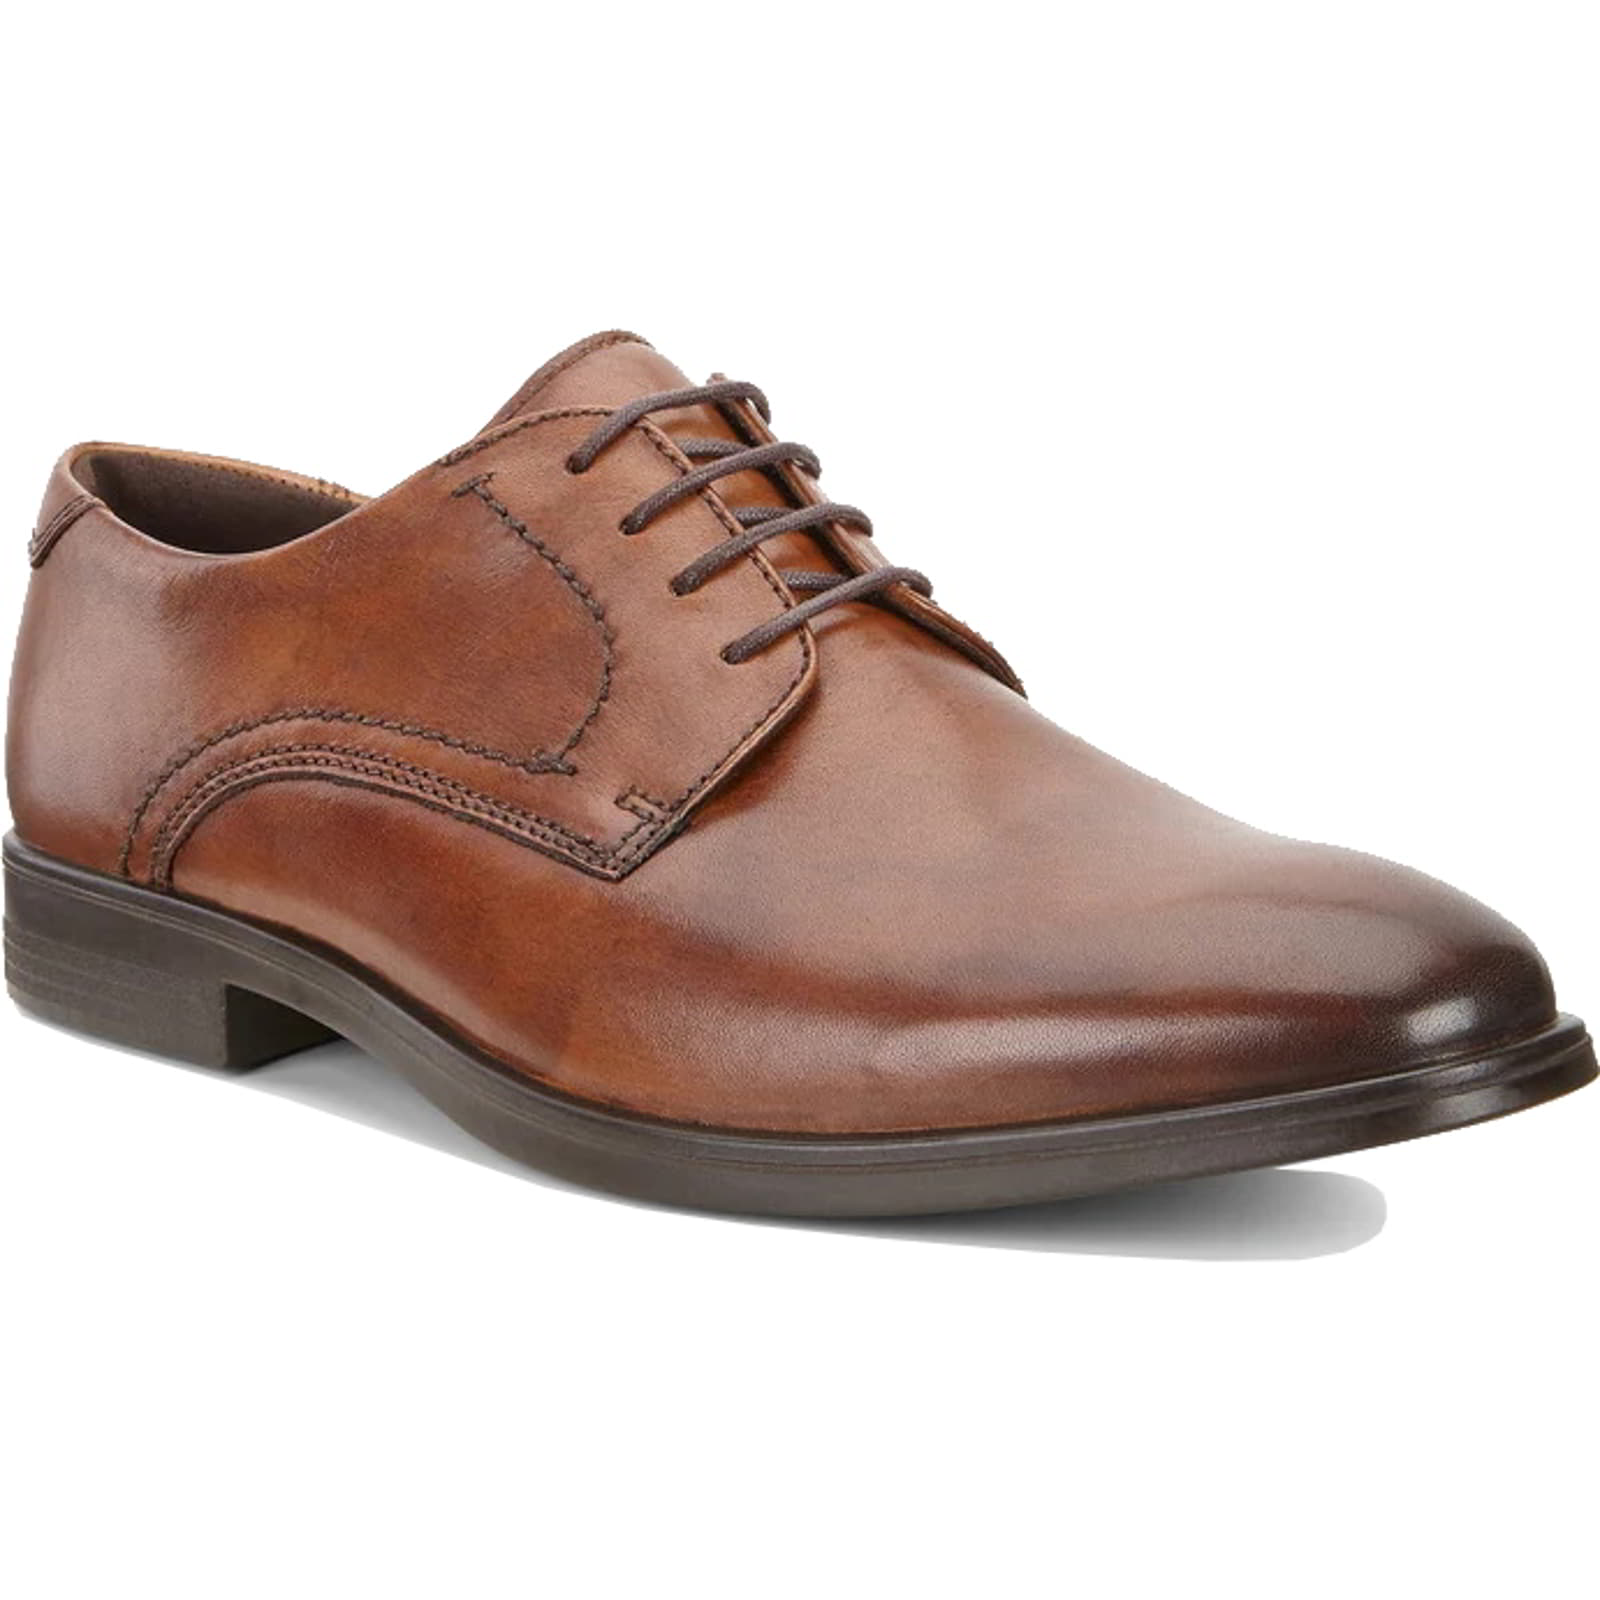 Ecco Melbourne Men's Shoes | Leather Derby Shoes Oxford Shoes - UK 11.5 / EU 46